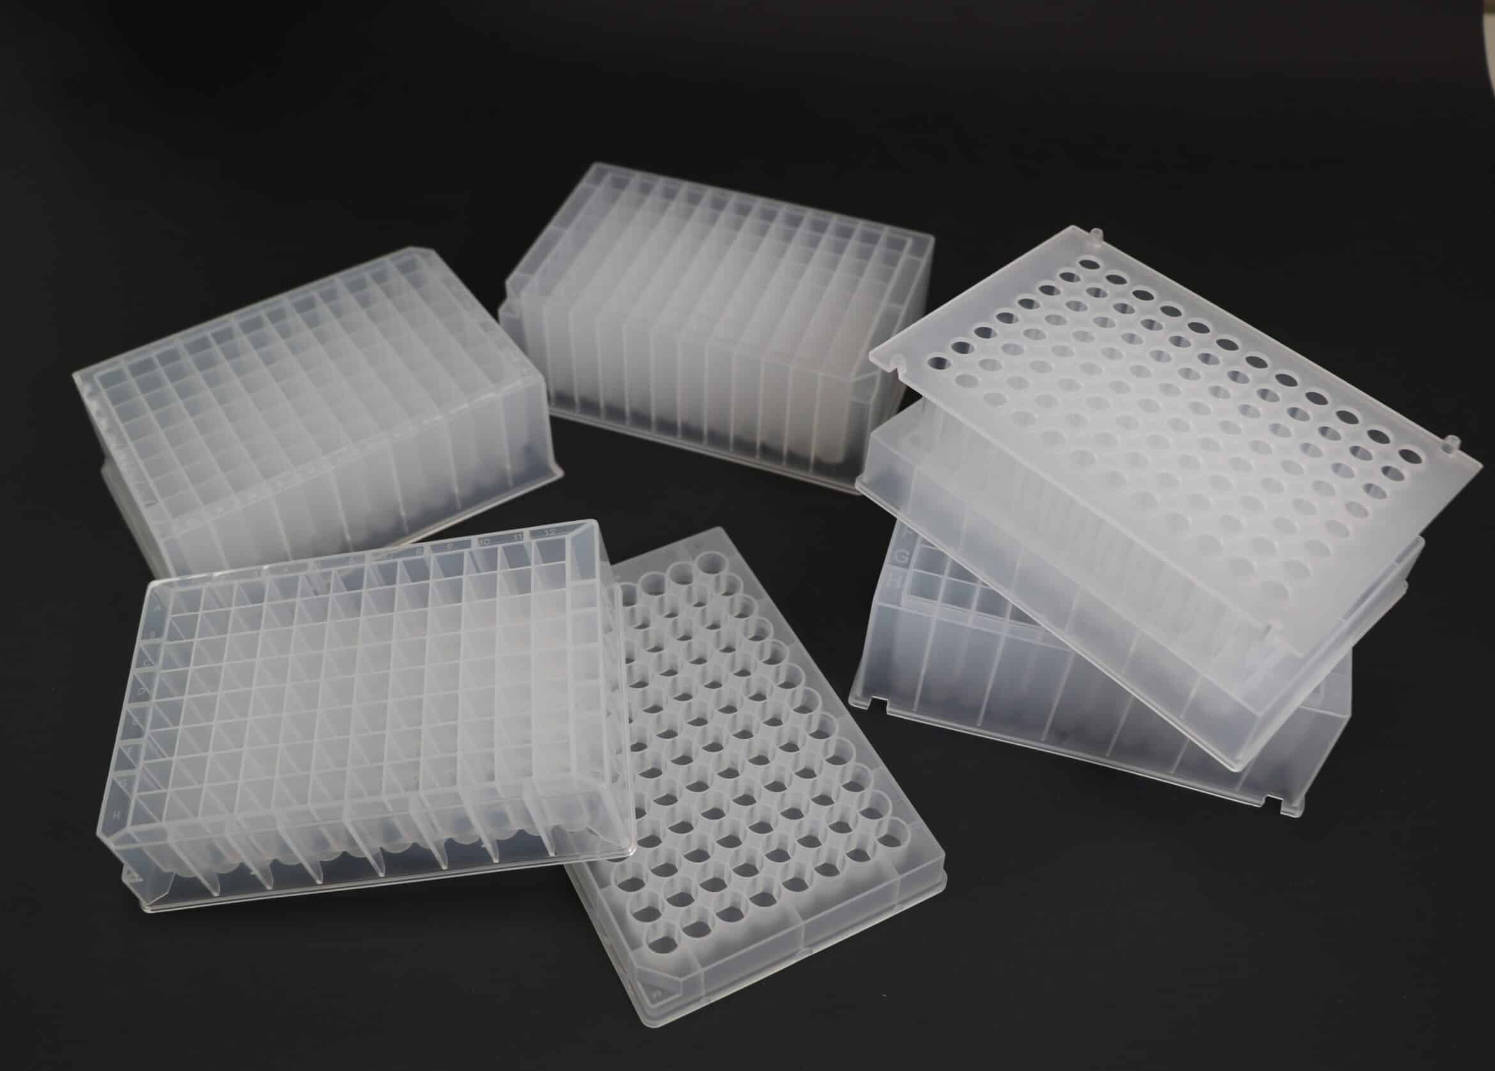 Wie sterilisieren Sie Ihre Deep-Well-Platten im Labor?